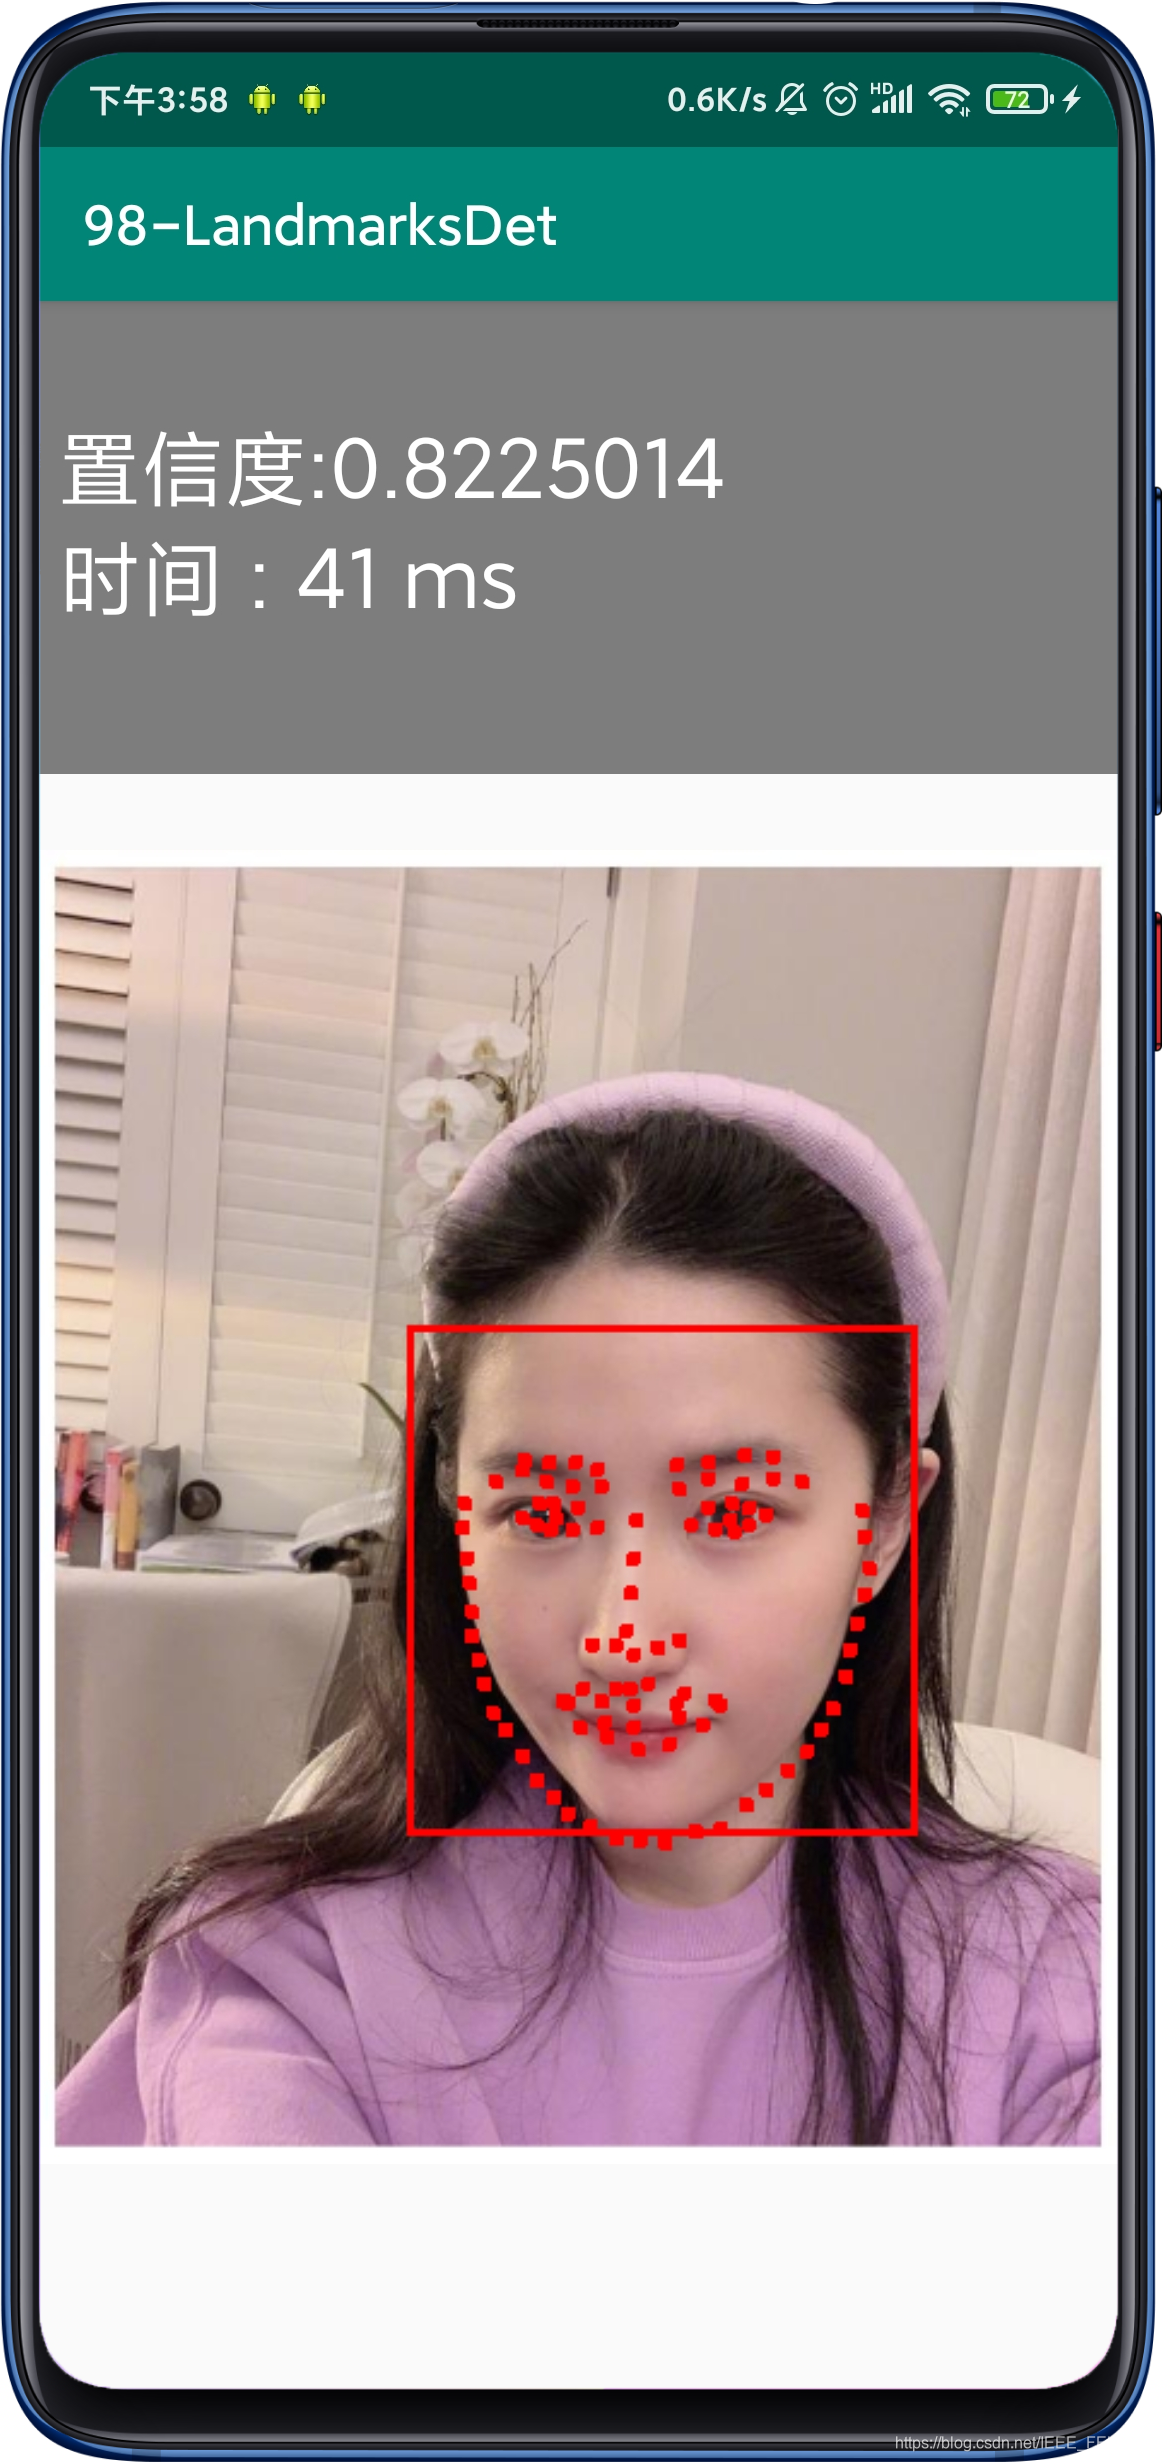 一键换脸：智感中心提出基于参考图像的人脸组成编辑方法----自动化研究所